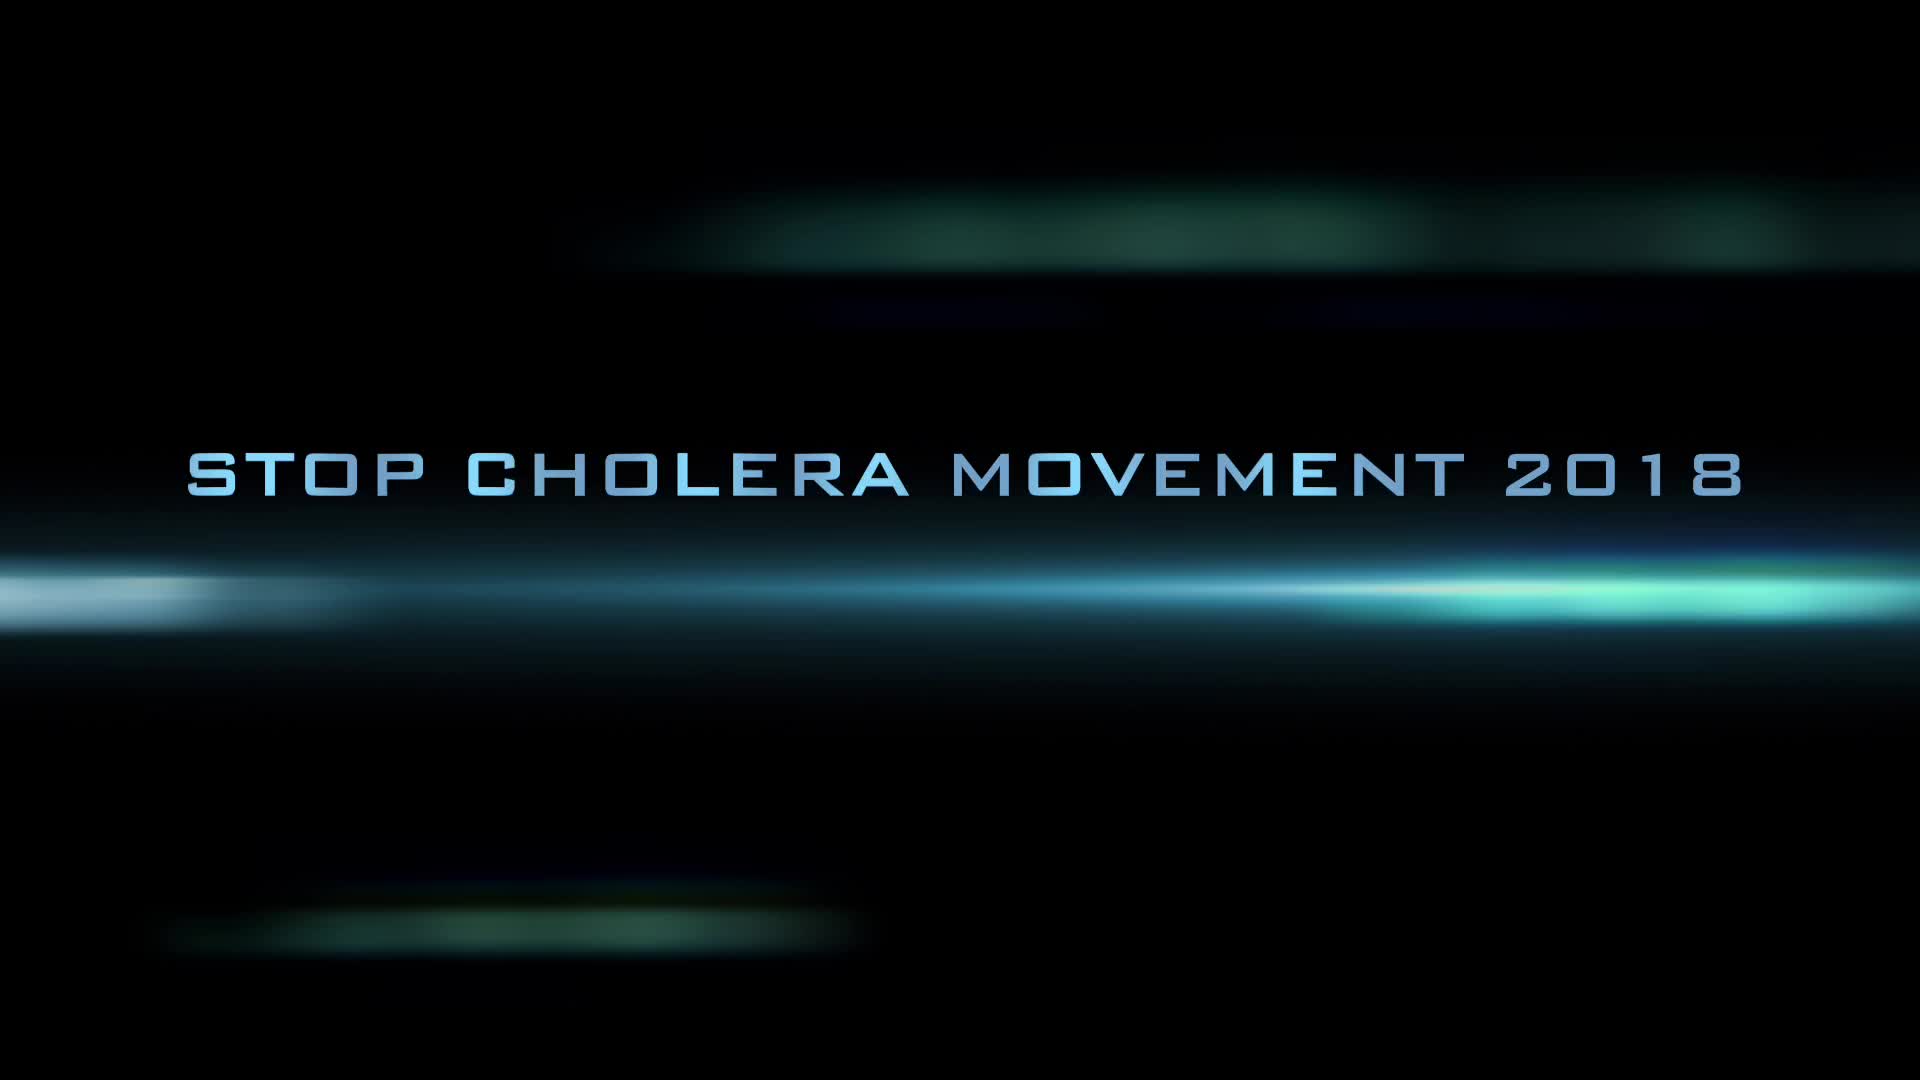 Public Service Announcement/Stop Cholera Movement 2018